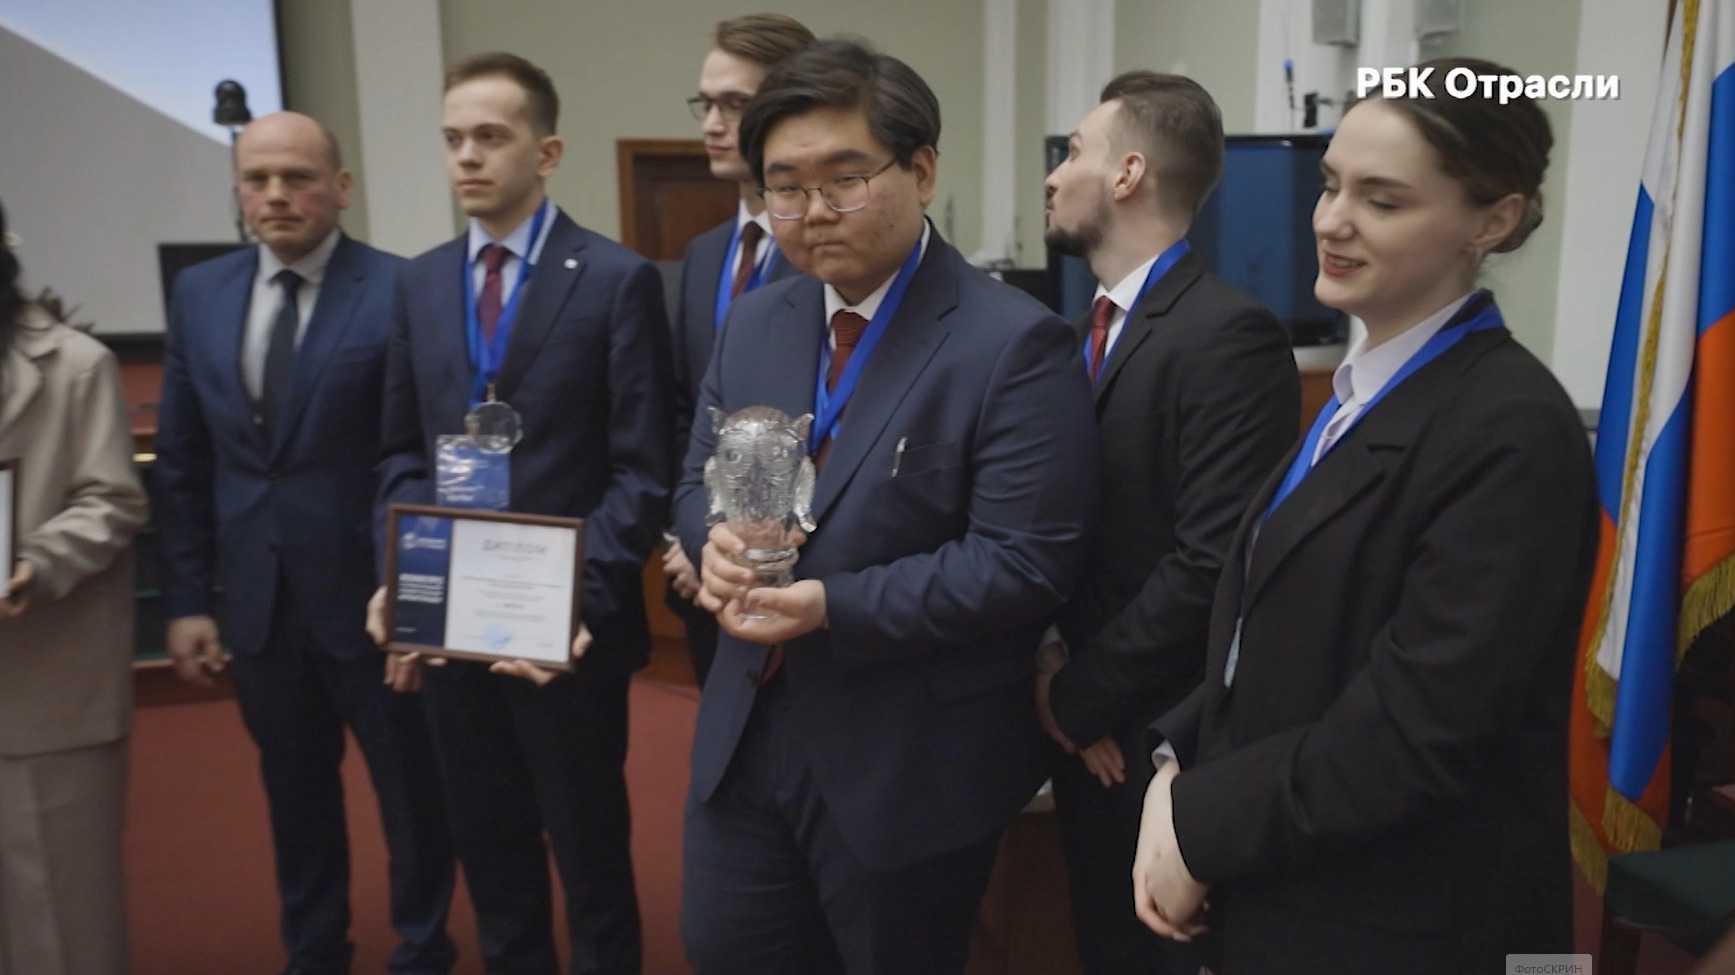 ТПП России совместно с ВАВТ провела международный студенческий конкурс